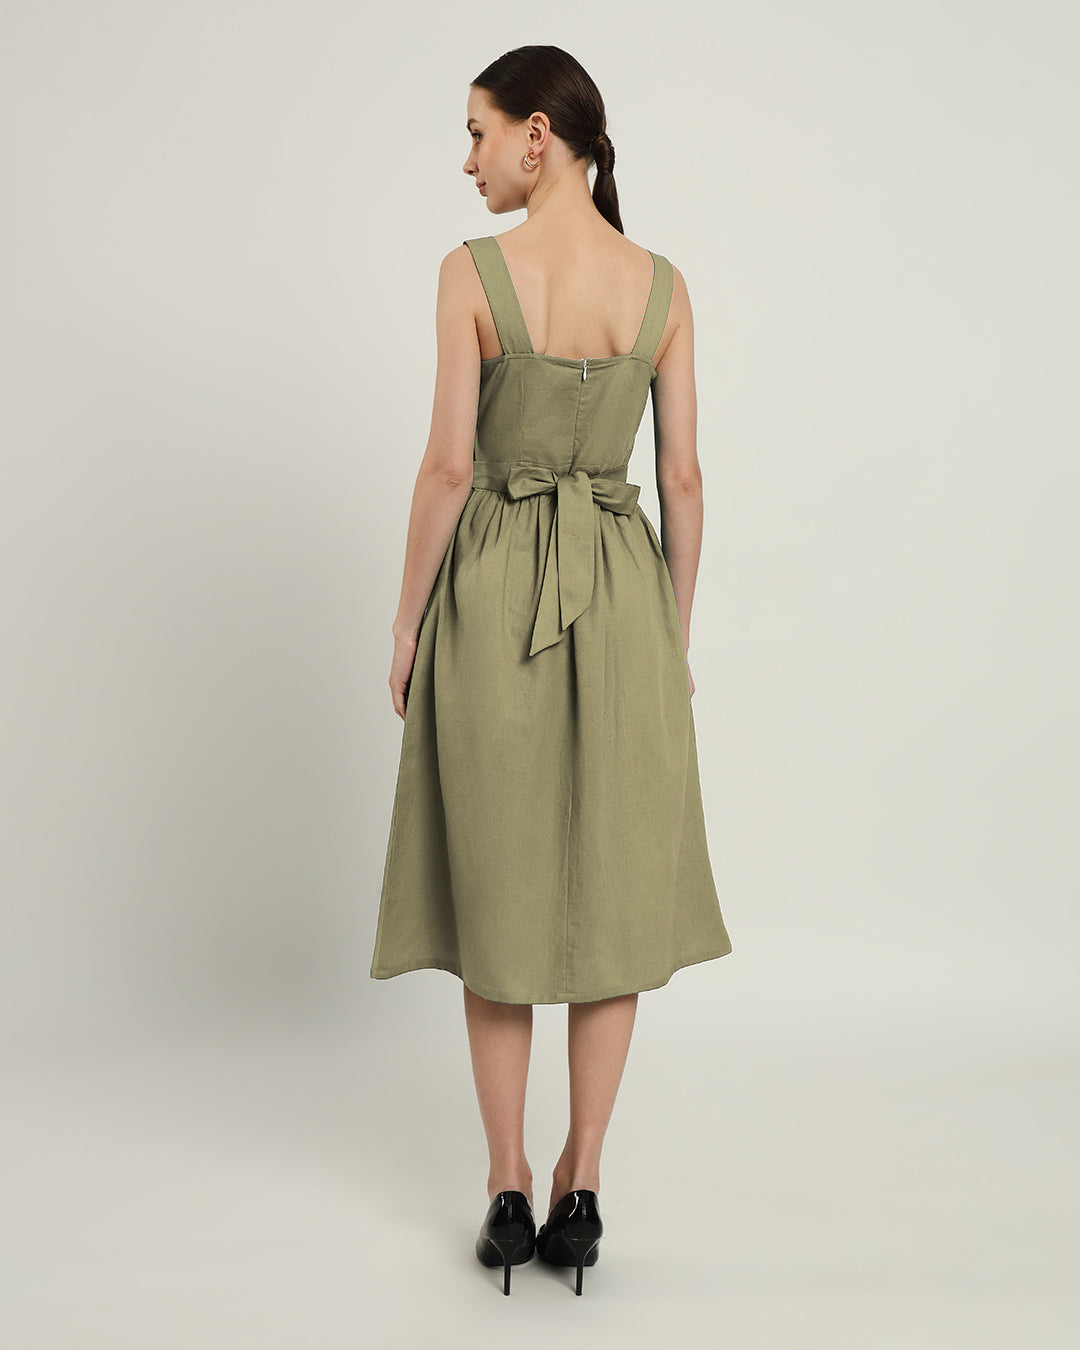 The Mihara Daisy Olive Linen Dress